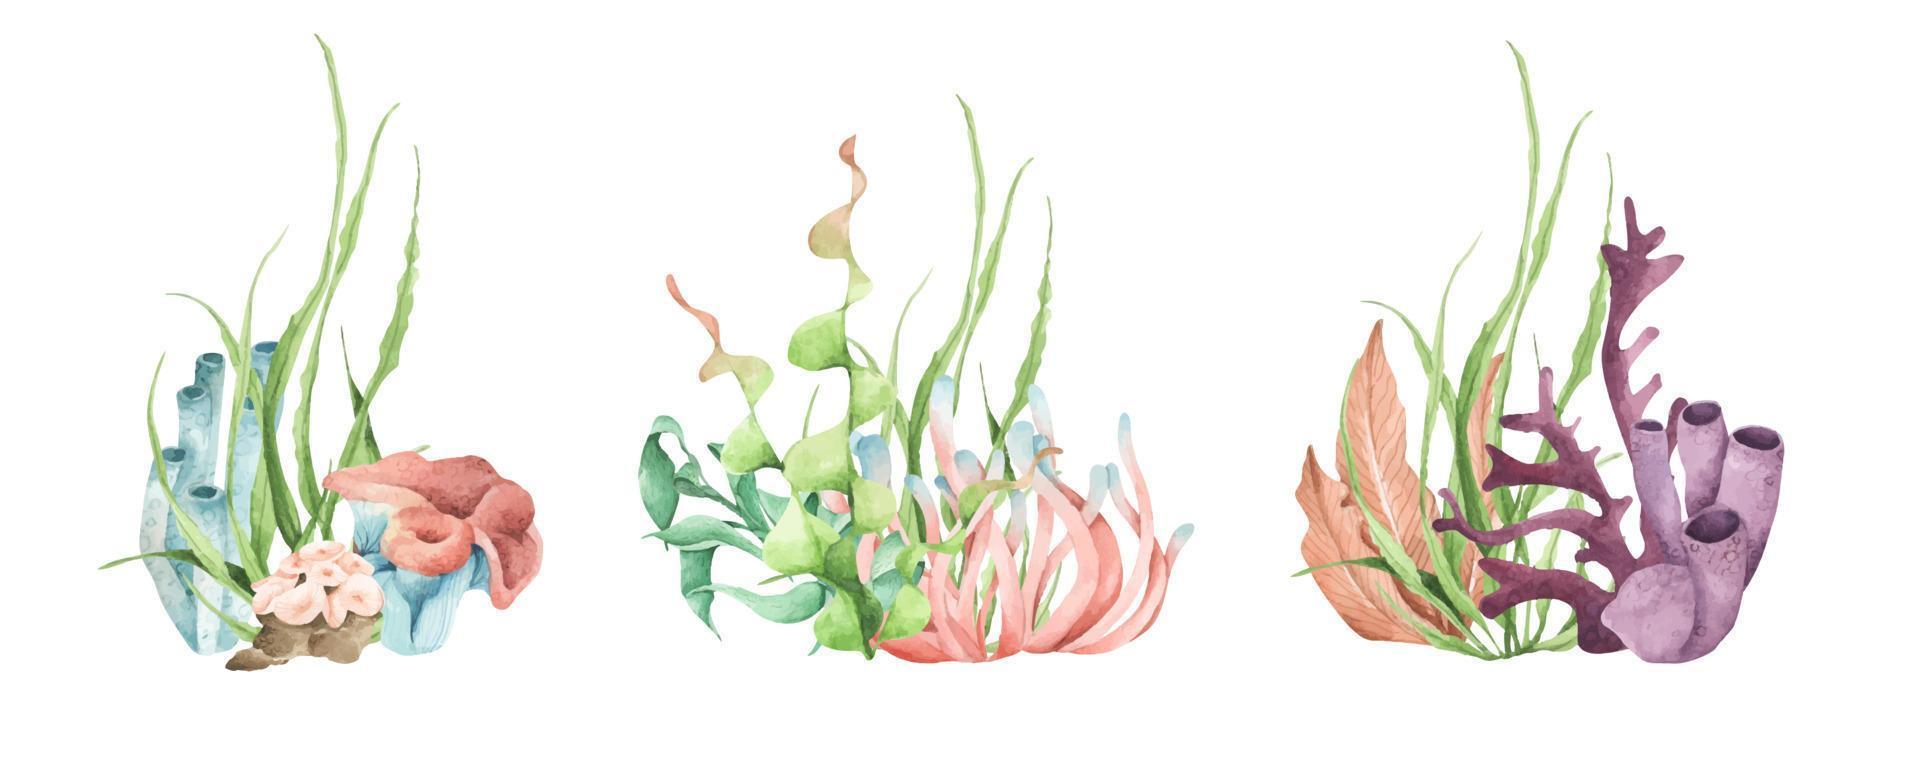 alghe. piante oceaniche subacquee, elementi di corallo marino. illustrazione ad acquerello. vettore